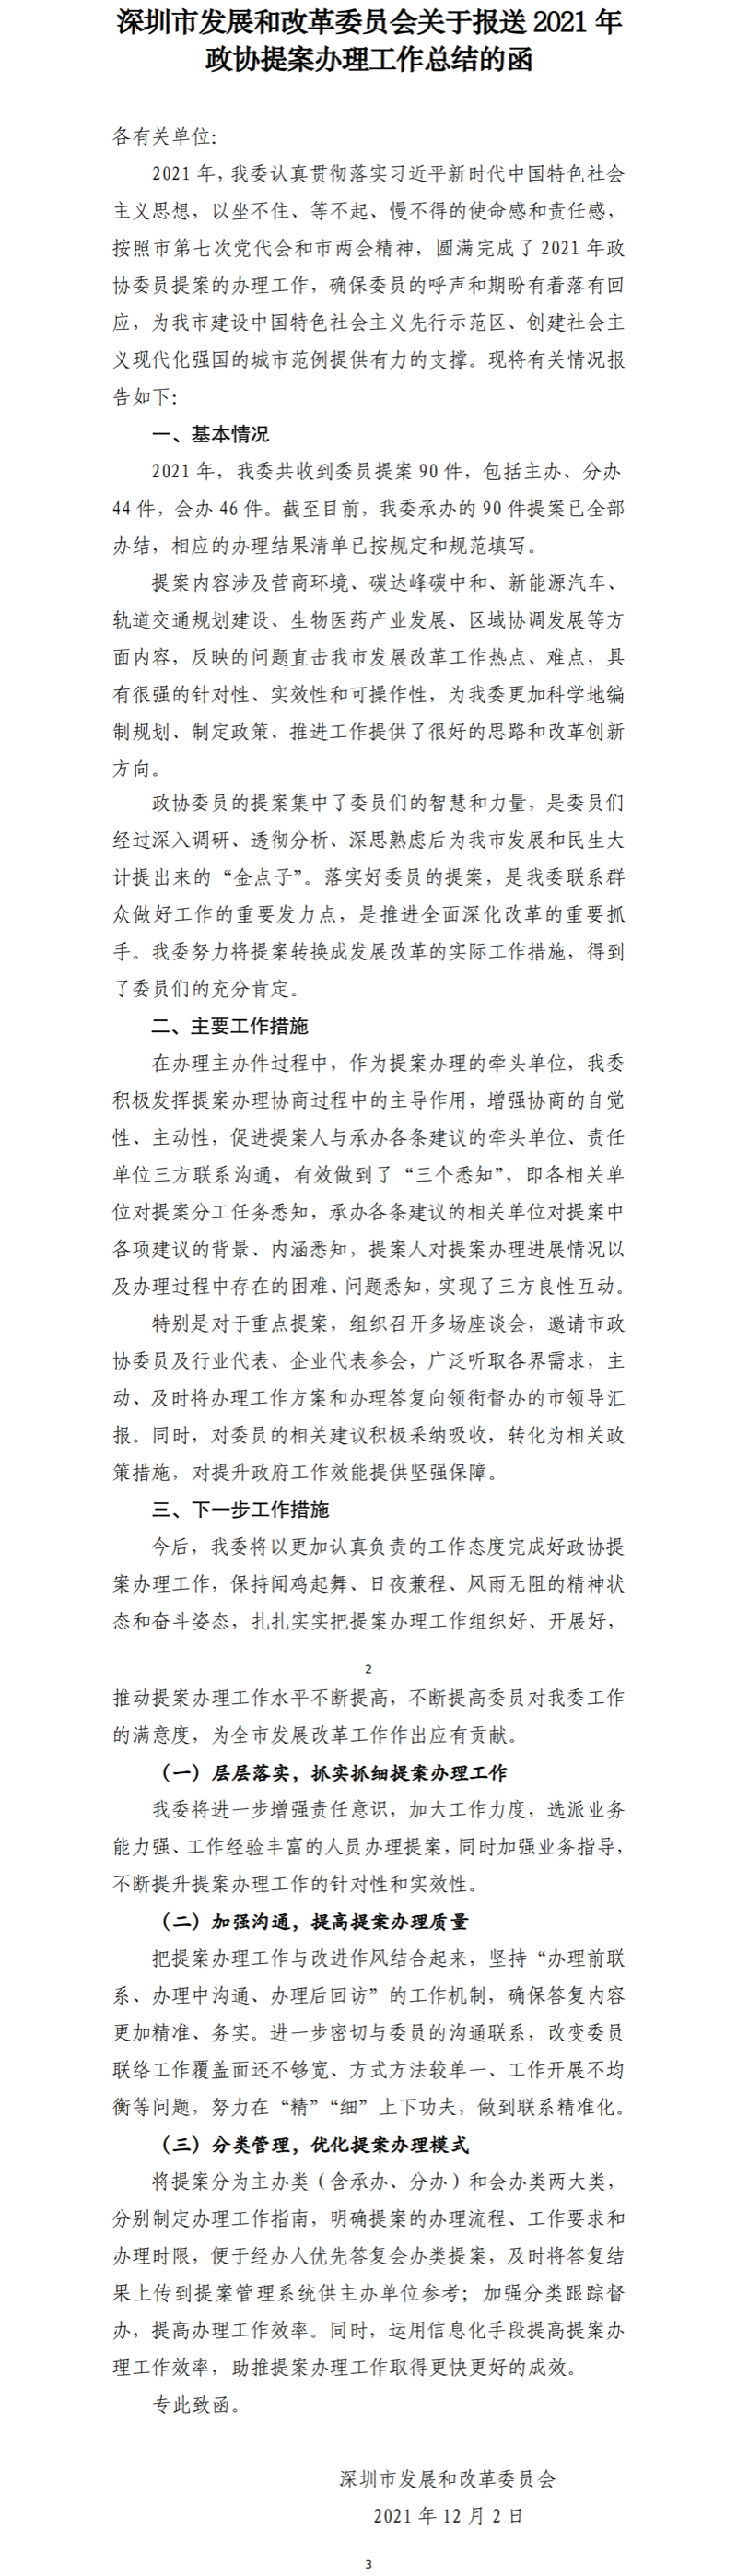 深圳市发展和改革委员会关于报送2021年政协提案办理工作总结的函.png